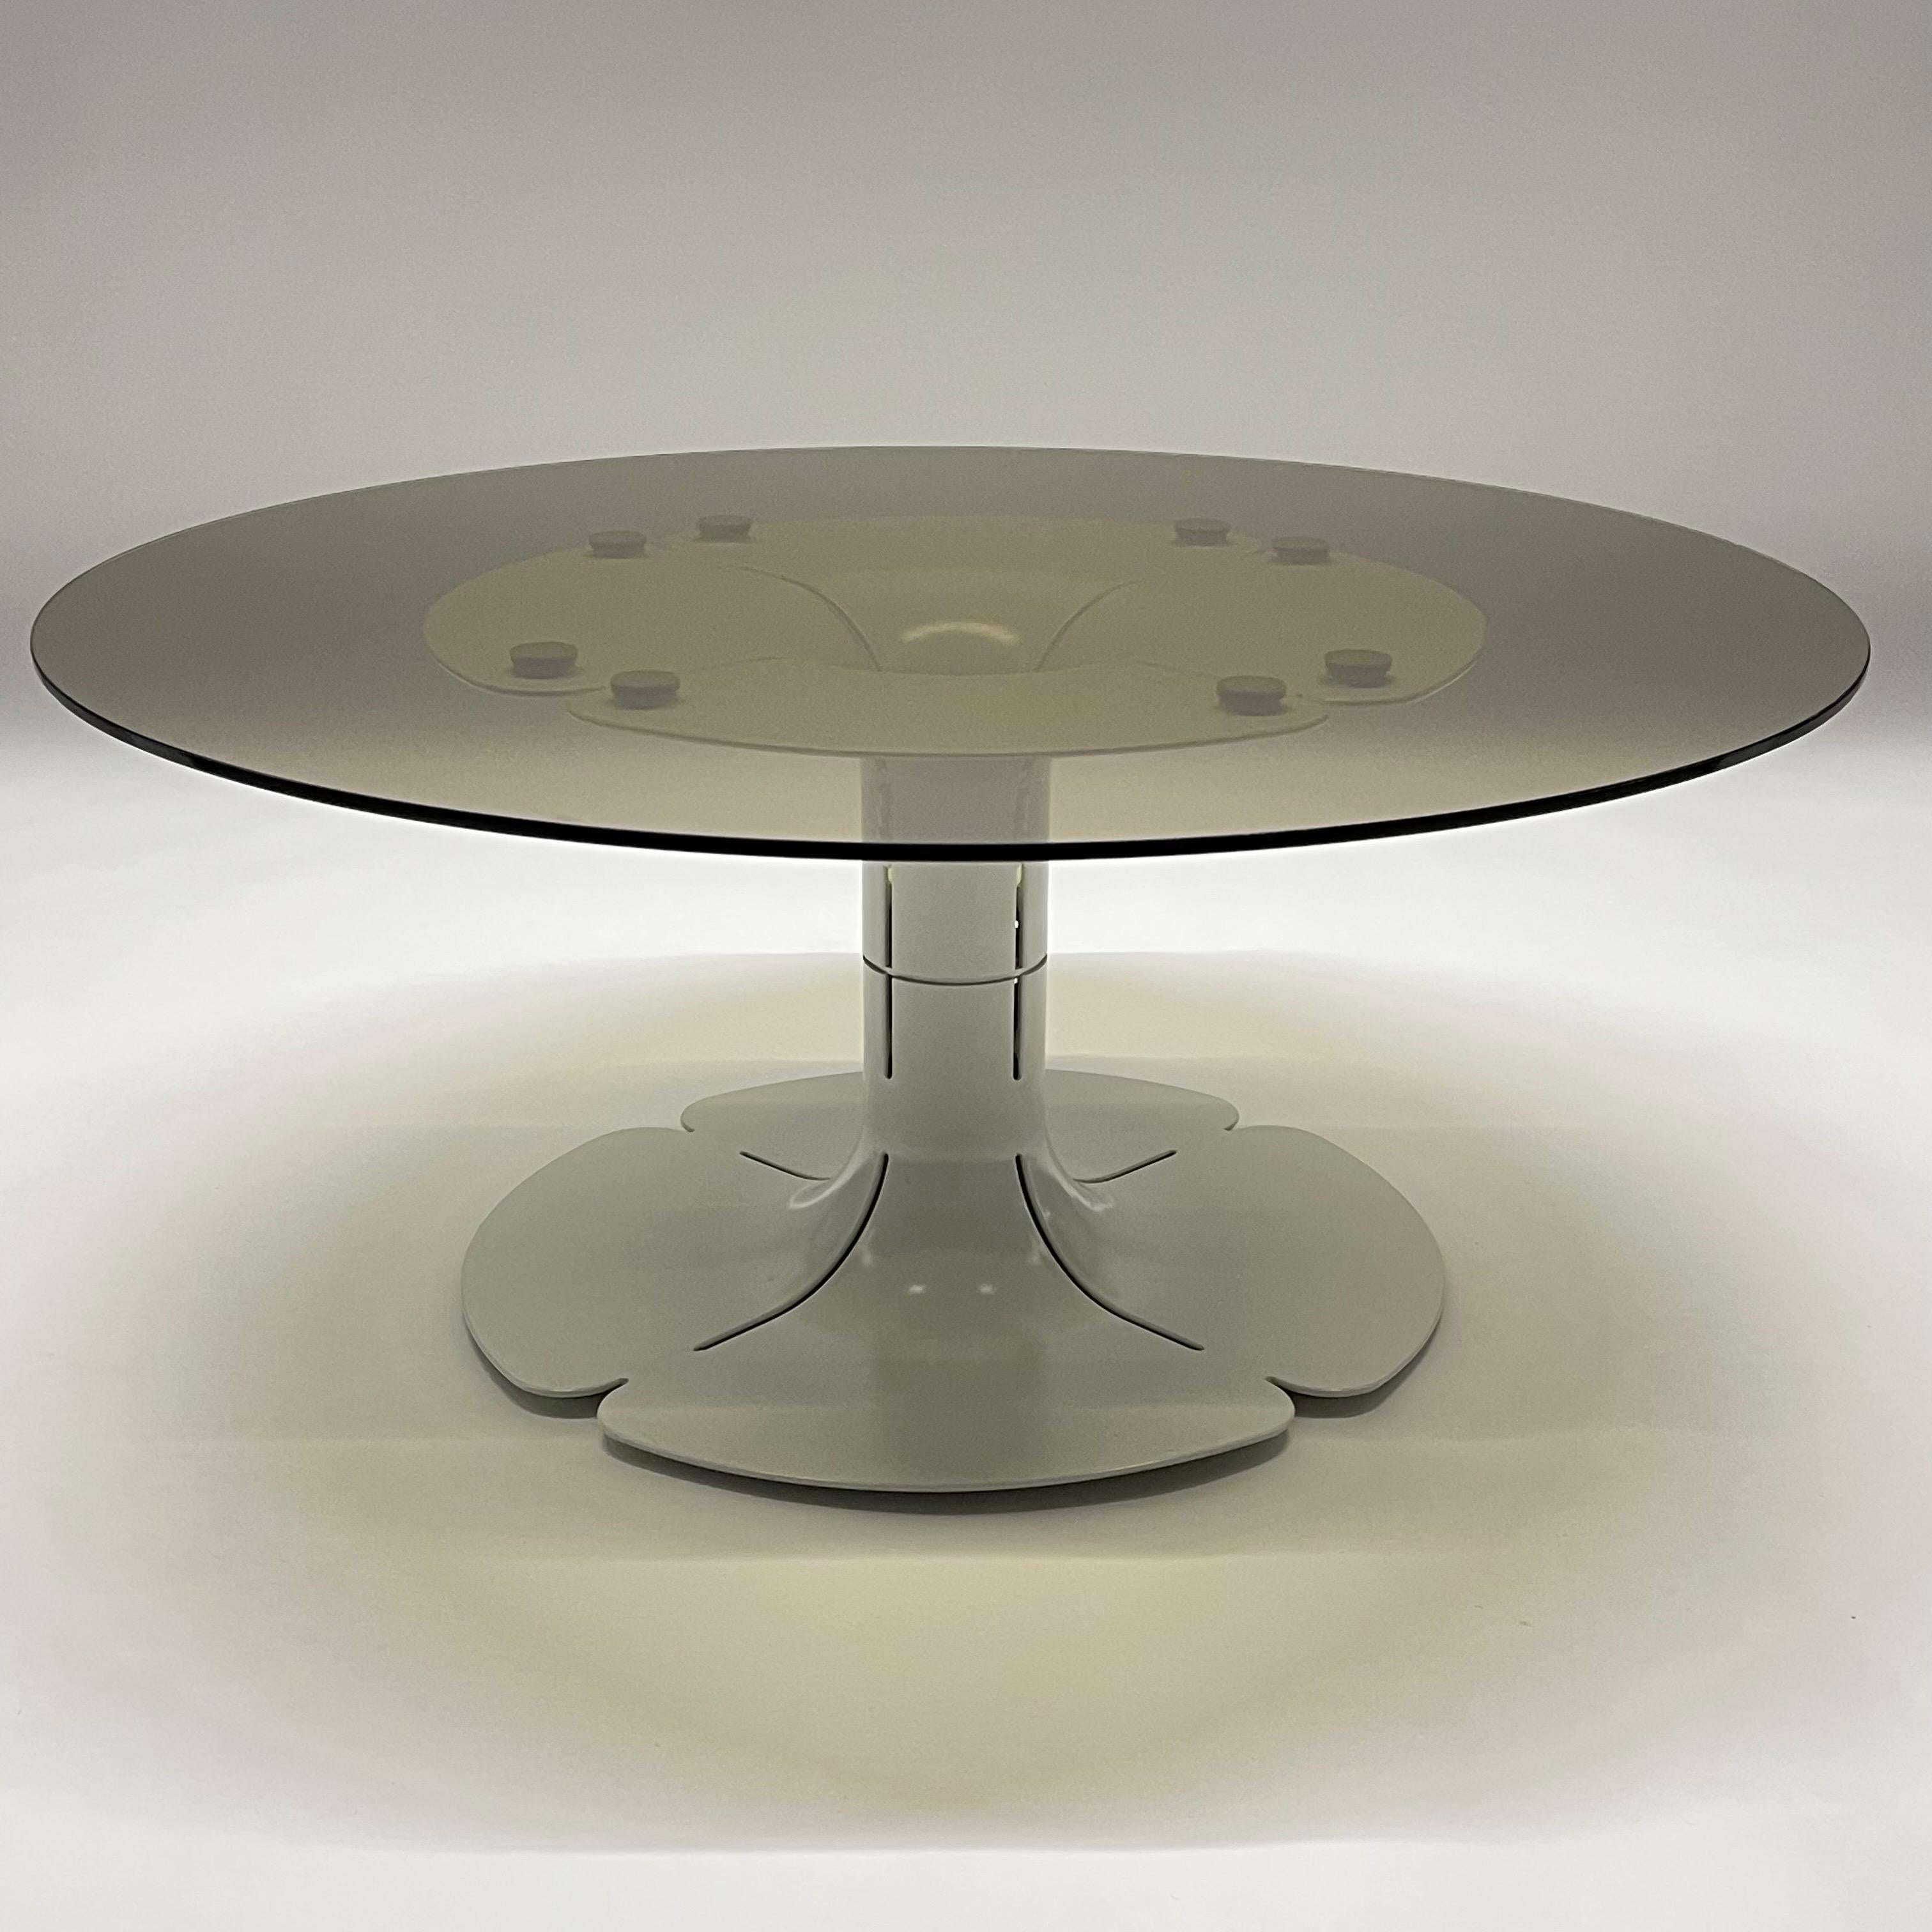 Seltene und wichtige Ikone des 20. Jahrhunderts Design Élysée niedrigen Tisch, Kaffee oder Cocktail-Tisch. Bei diesem Stück handelt es sich um eine Ausgabe des Entwurfs von Pierre Paulin für das private Wohnzimmer von Präsident Georges Pompidou und